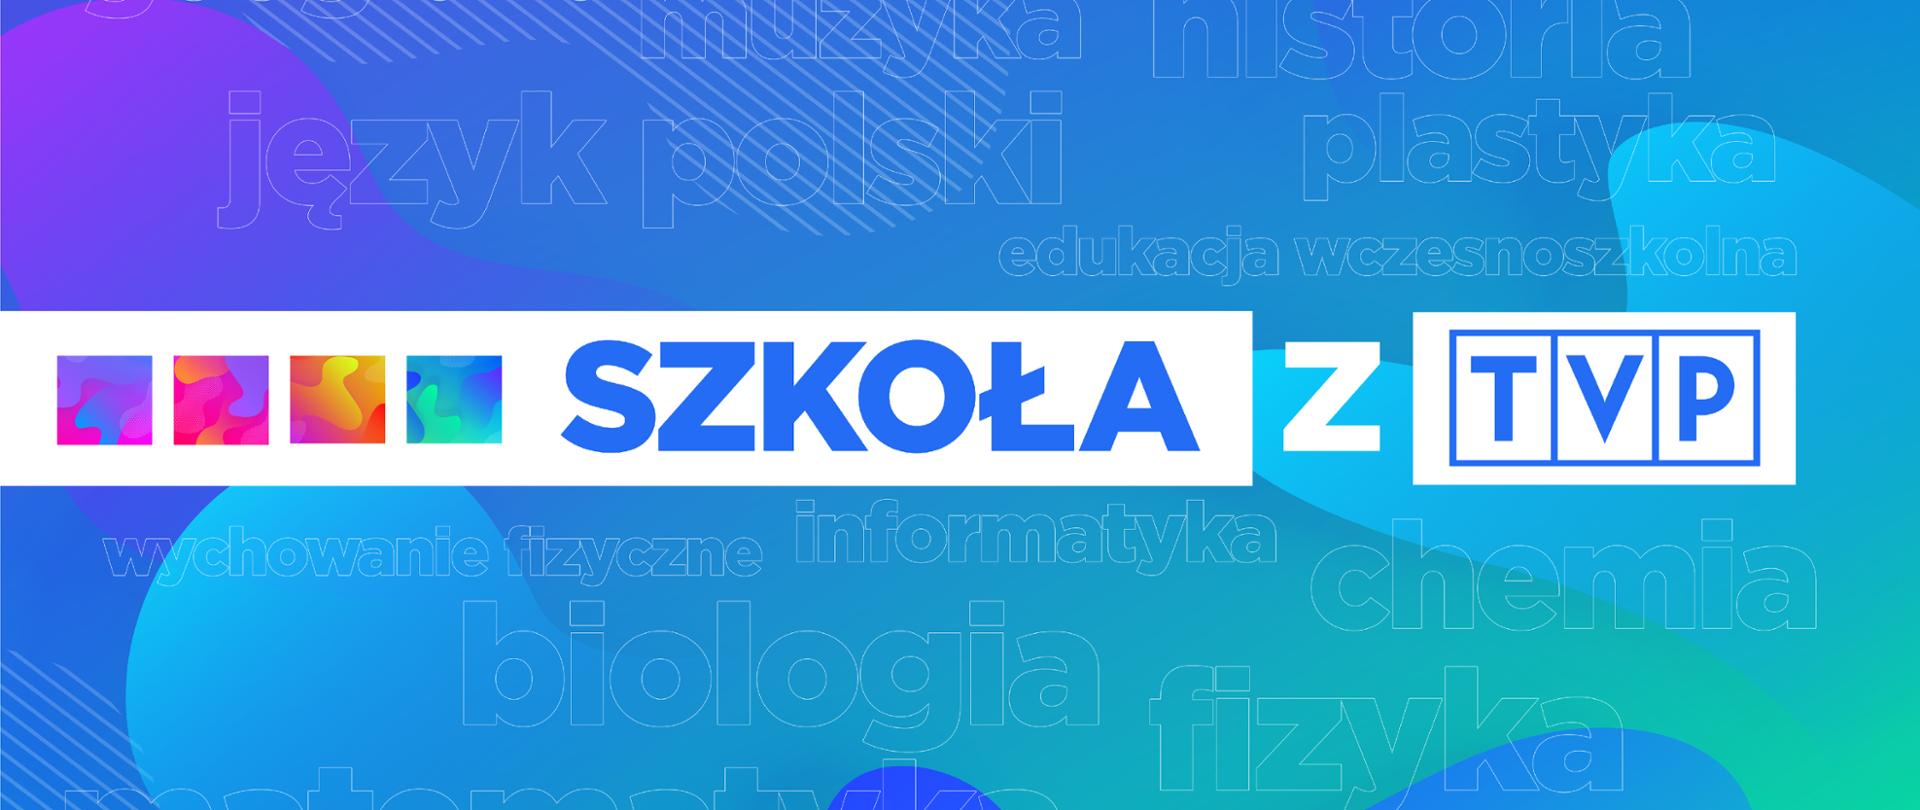 Kolorowa grafika z logo "Szkoła z TVP"